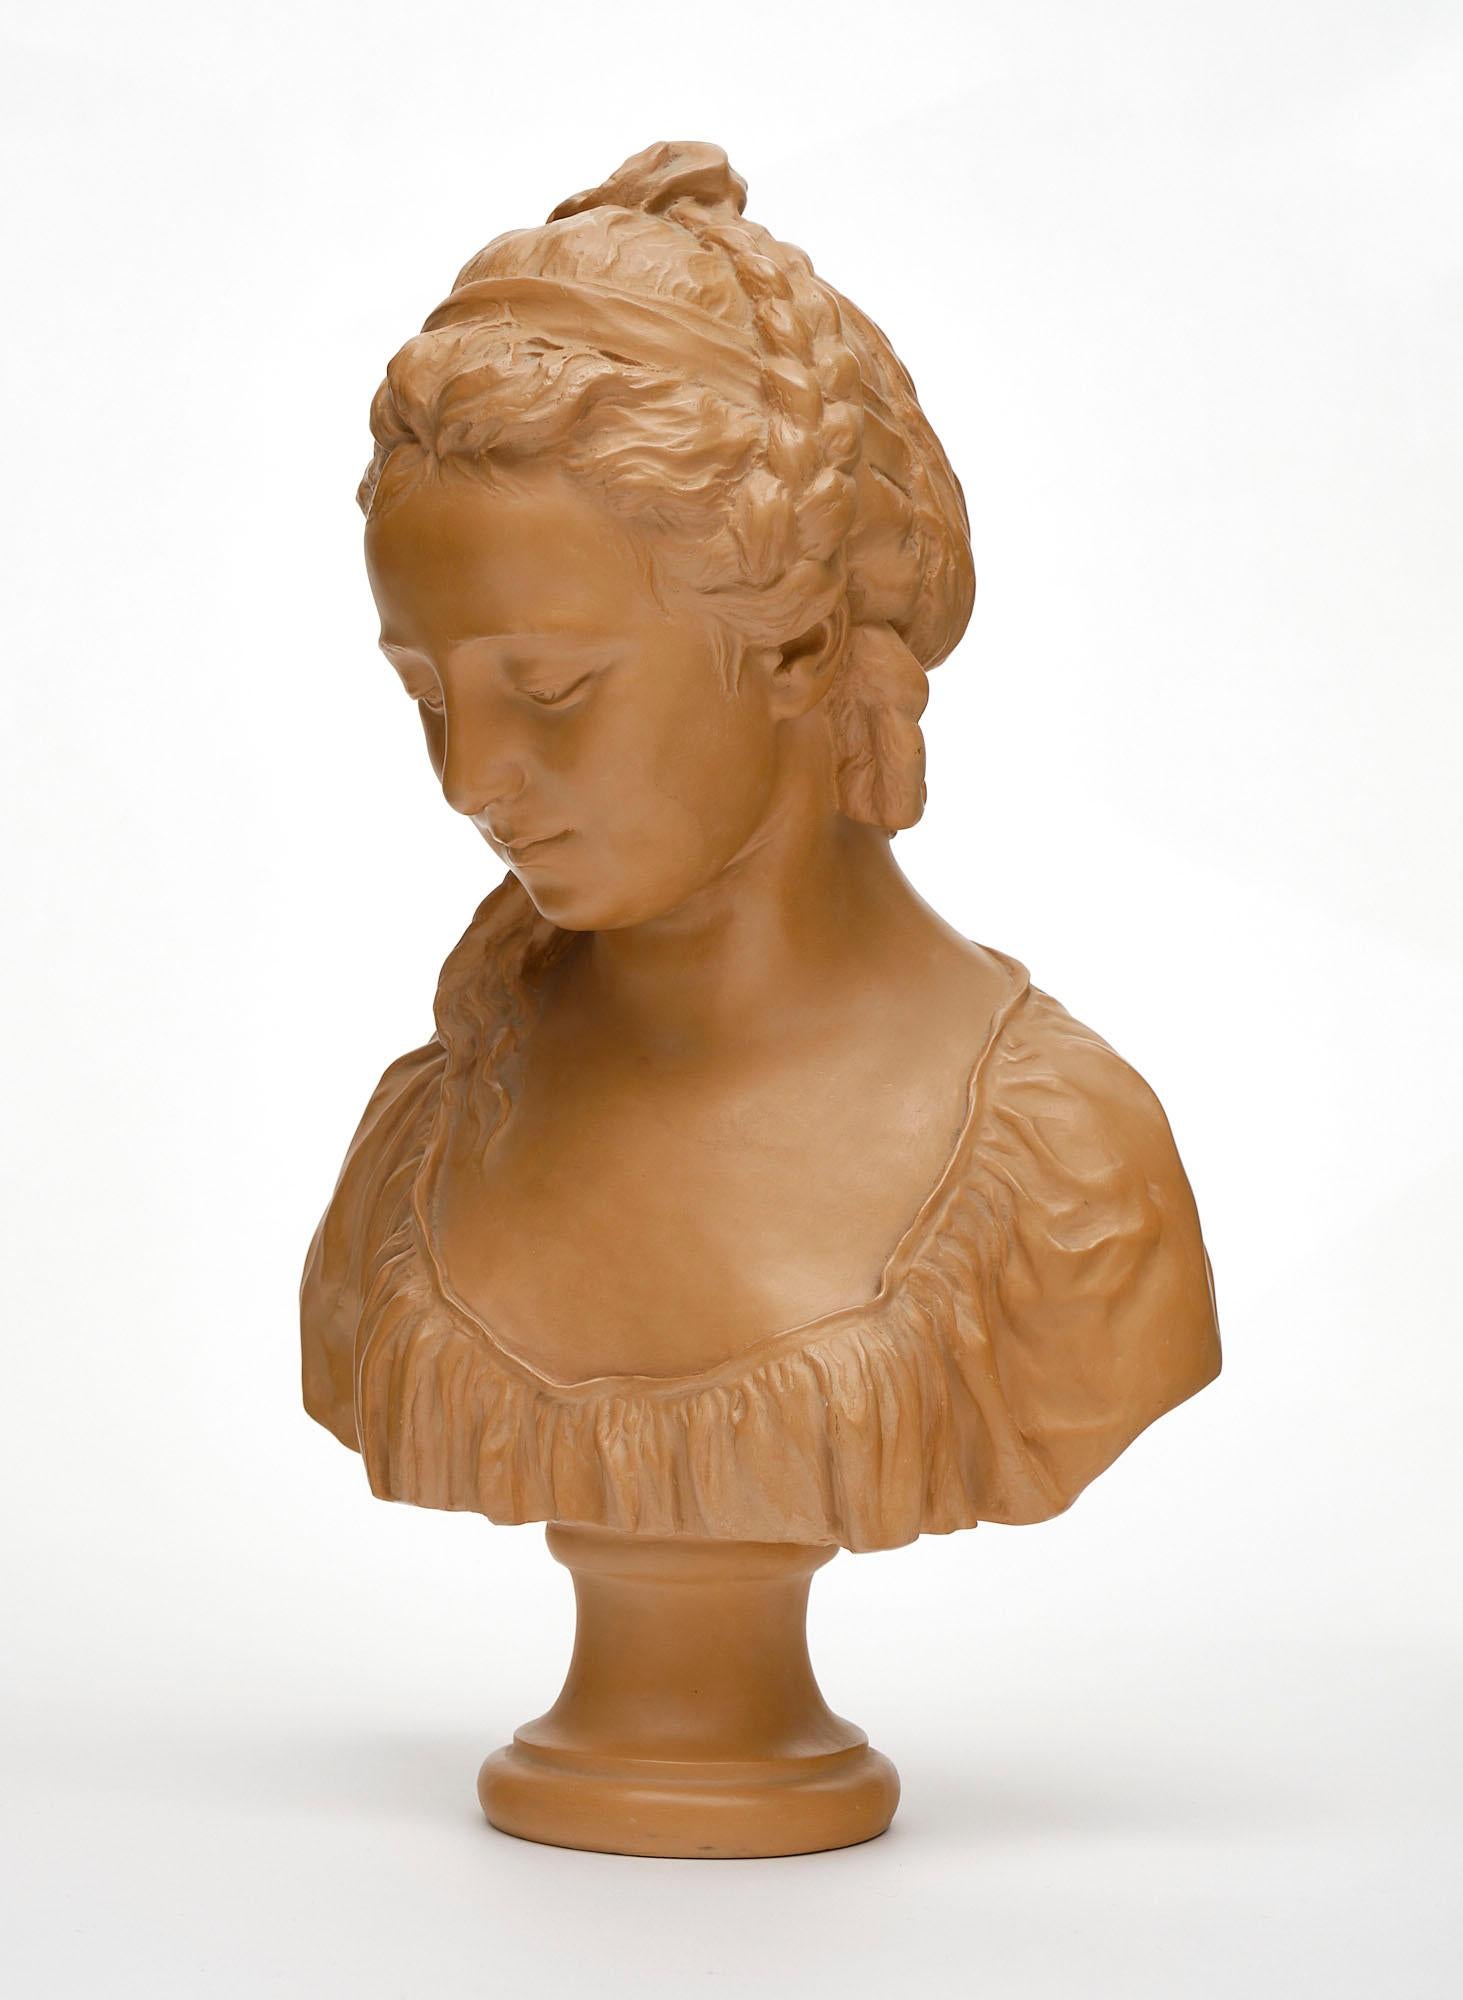 Buste sculptural français en terre cuite fabriqué à la main. Cette œuvre d'art vintage finement détaillée présente la ressemblance d'une femme et a un ton merveilleusement chaud.